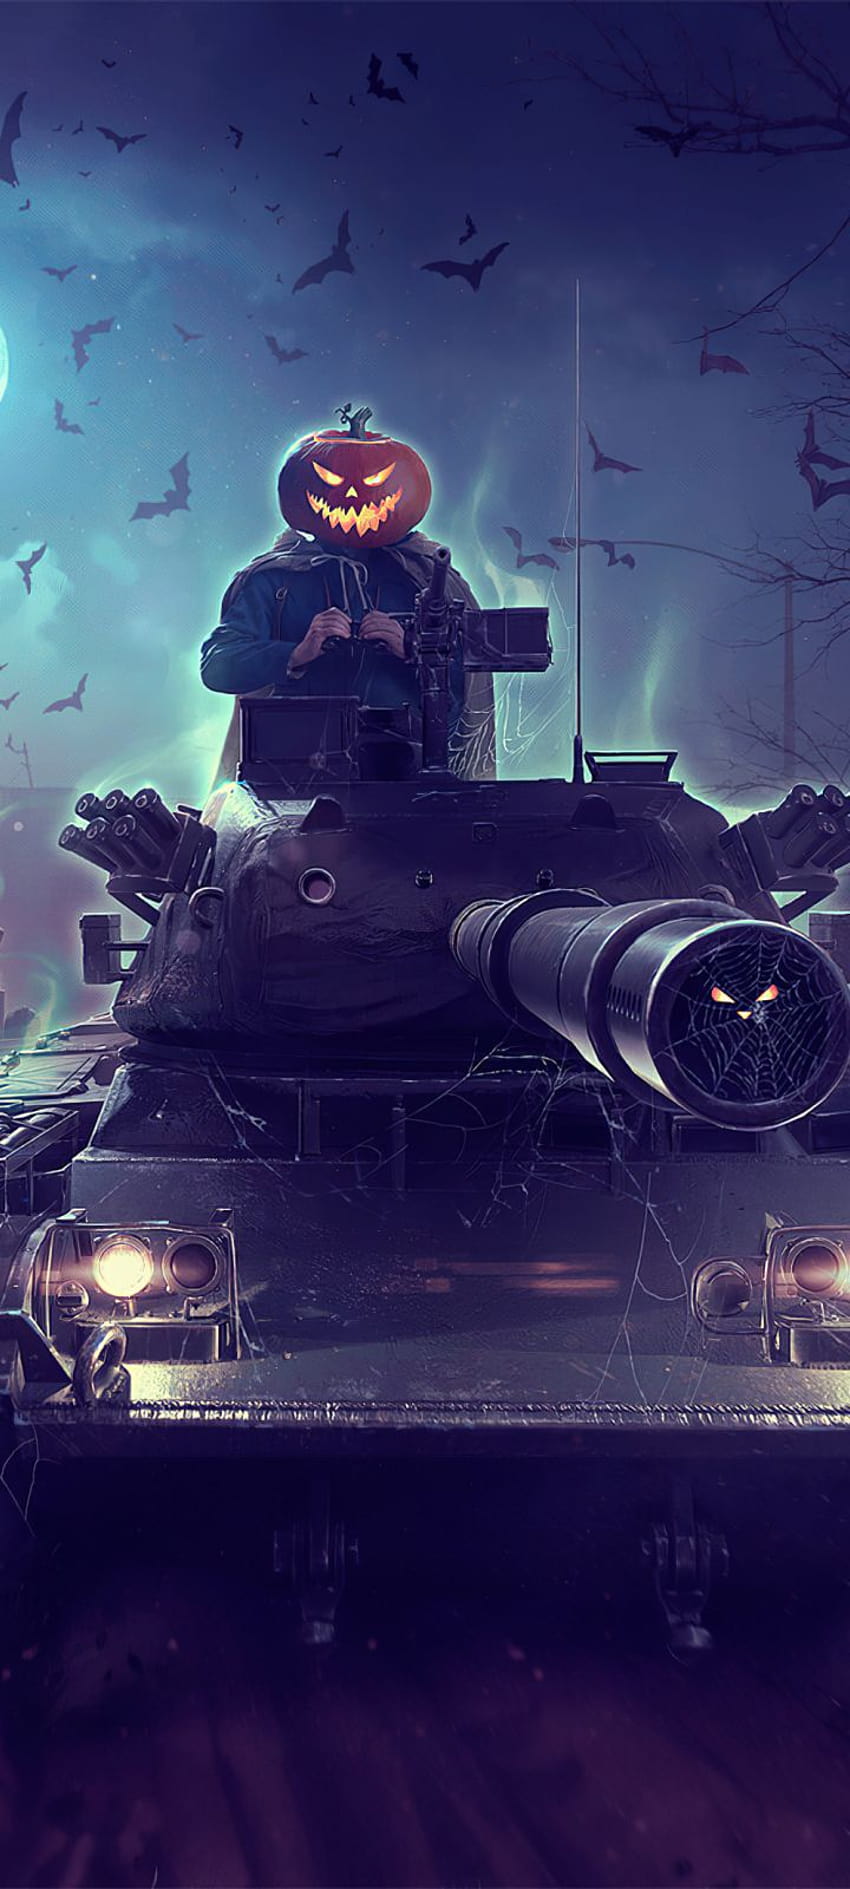 Halloween sắp đến rồi! Bạn đã sẵn sàng tham gia vào cuộc chiến hủy diệt với World of Tanks? Với những bản nhạc đáng sợ, những sự kiện đặc biệt và những trang phục ma quái, World of Tanks đã sẵn sàng cho một mùa Halloween đáng nhớ. Cùng tham gia và tìm hiểu thêm những tính năng độc đáo tại World of Tanks ngay thôi!